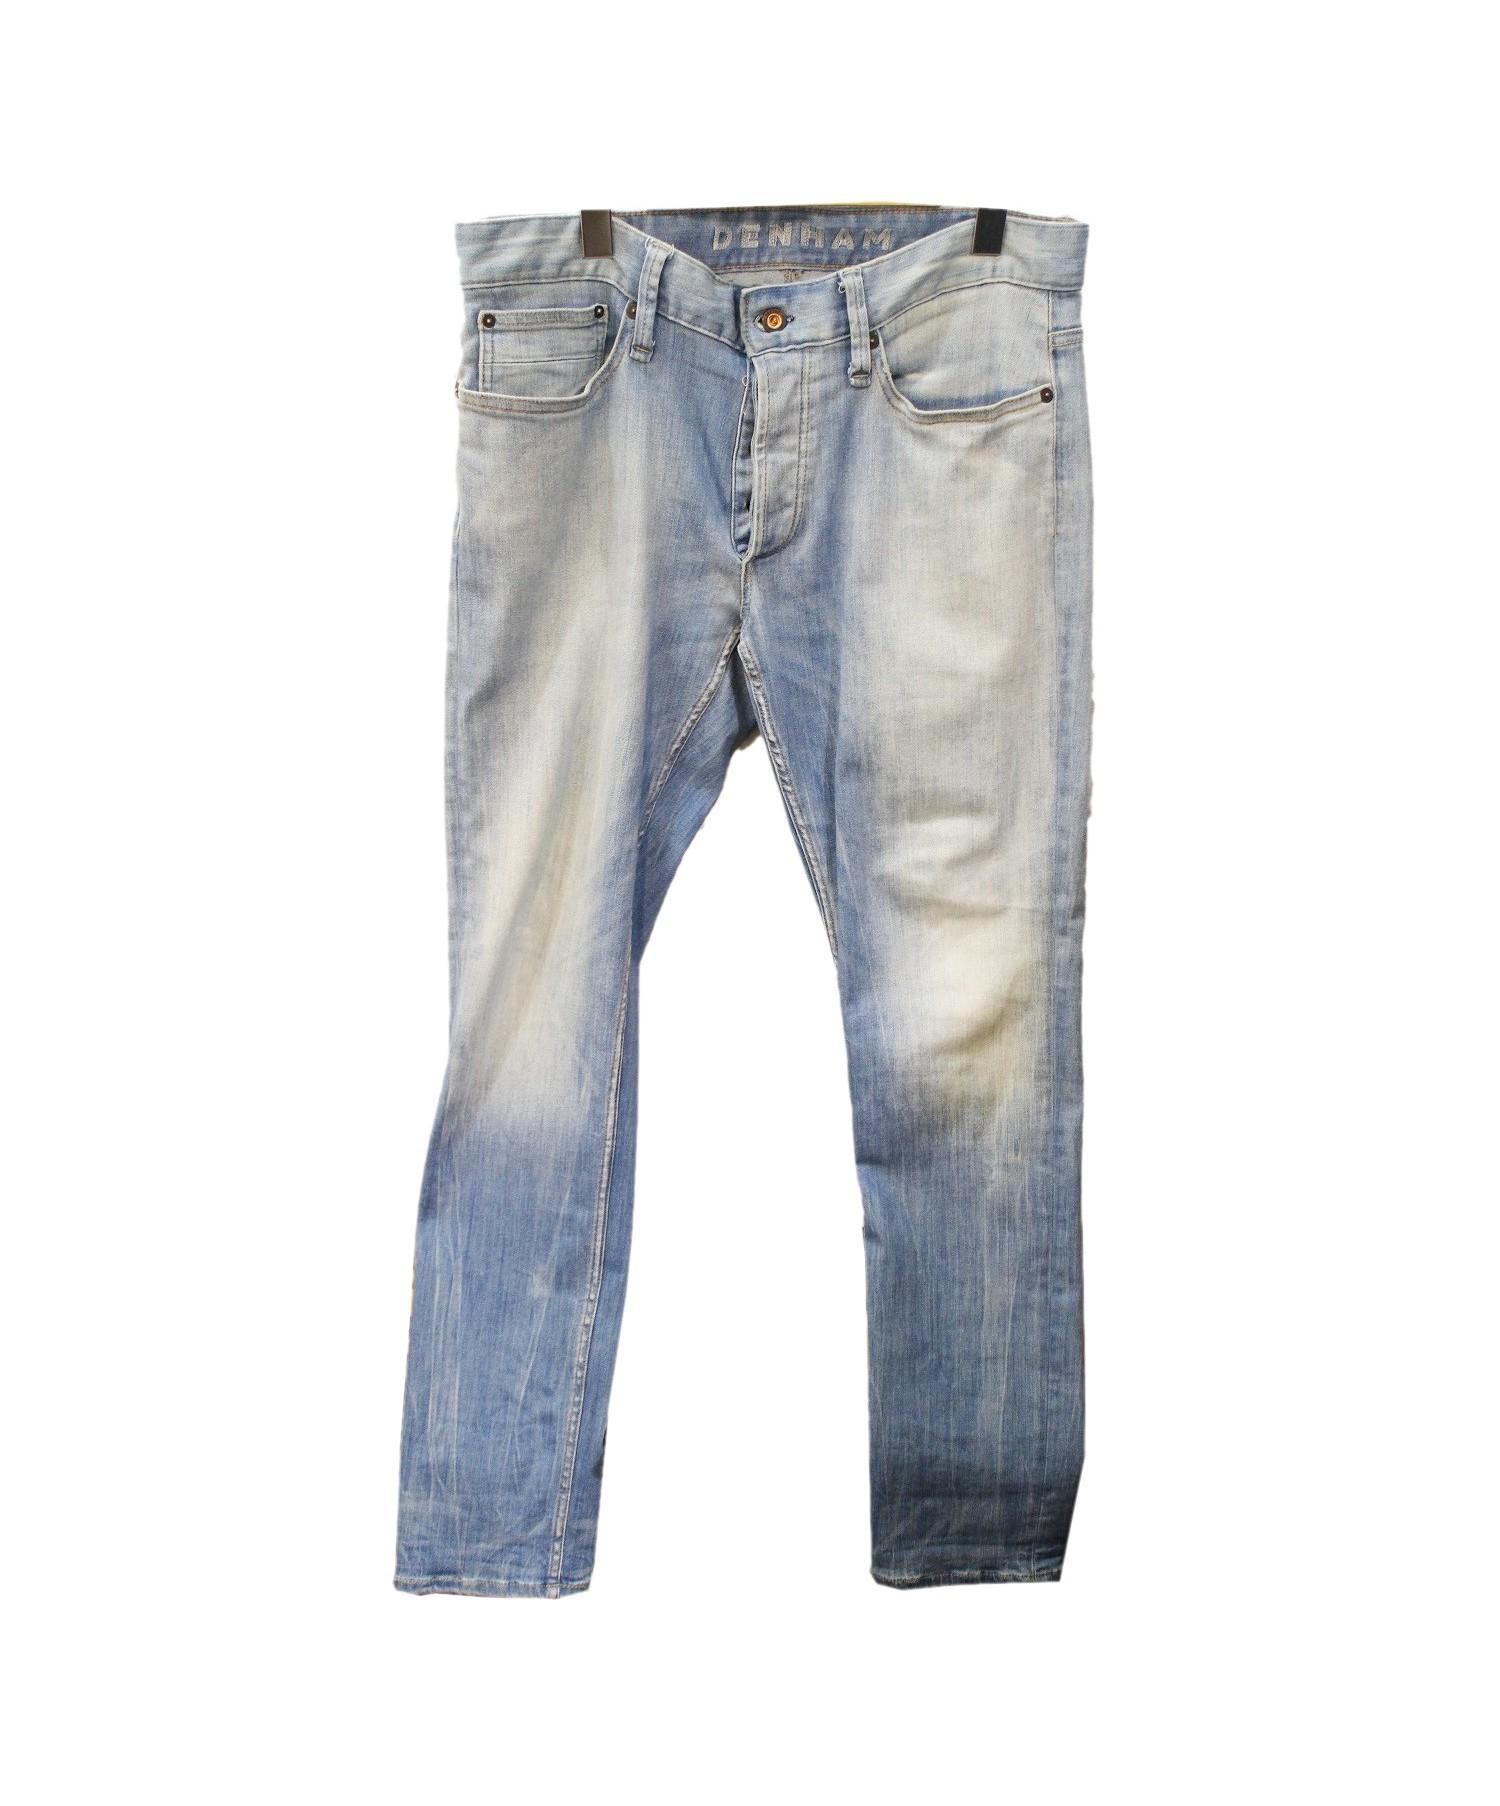 DENHAM (デンハム) Razor ASS Slim Fit Jeans サイズ:32